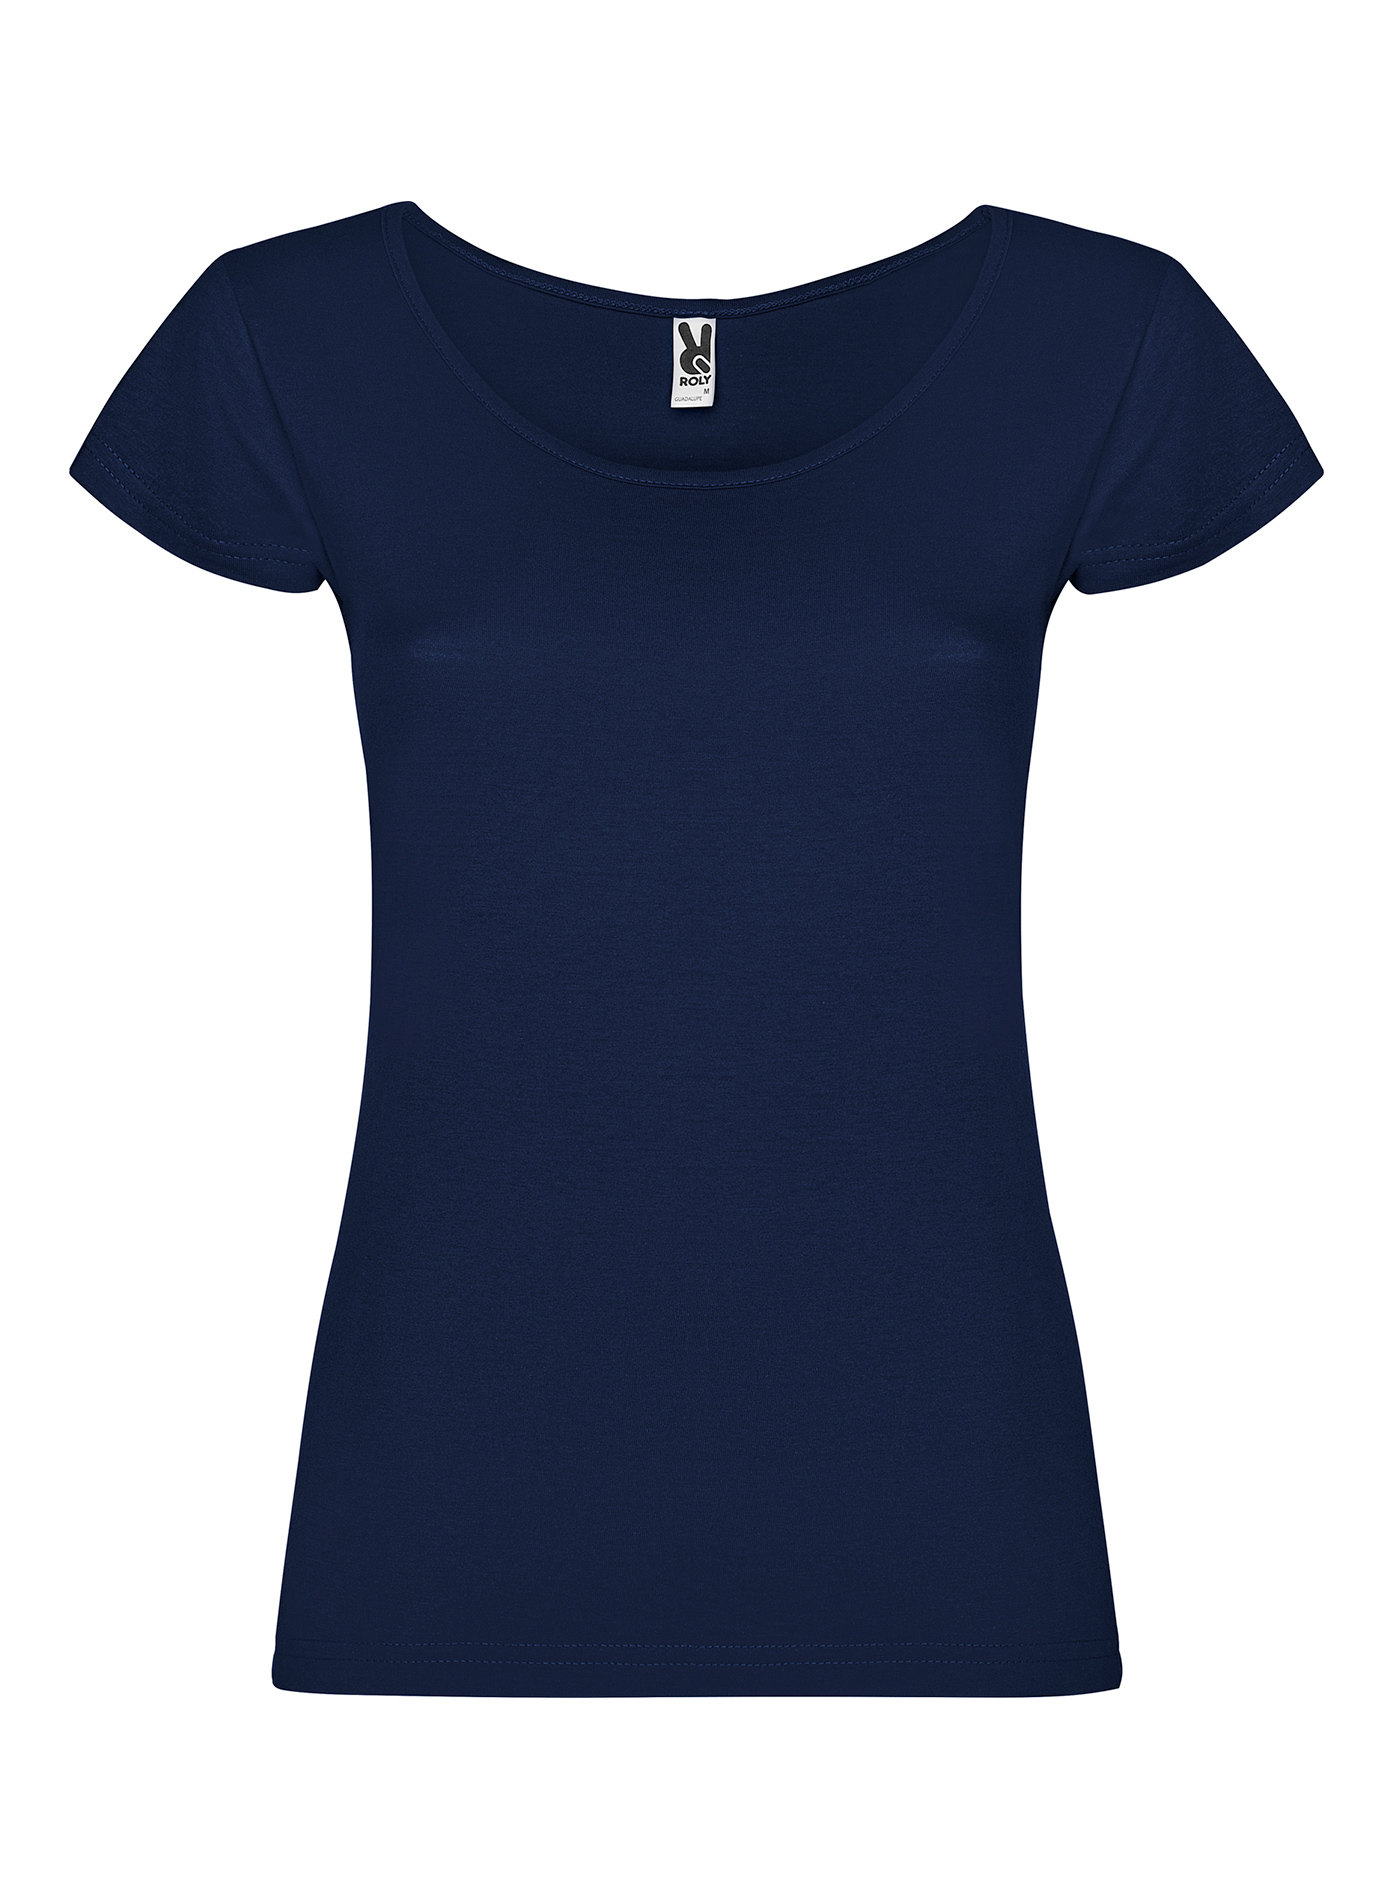 Dámské tričko Roly Guadalupe - Námořnická modrá XL